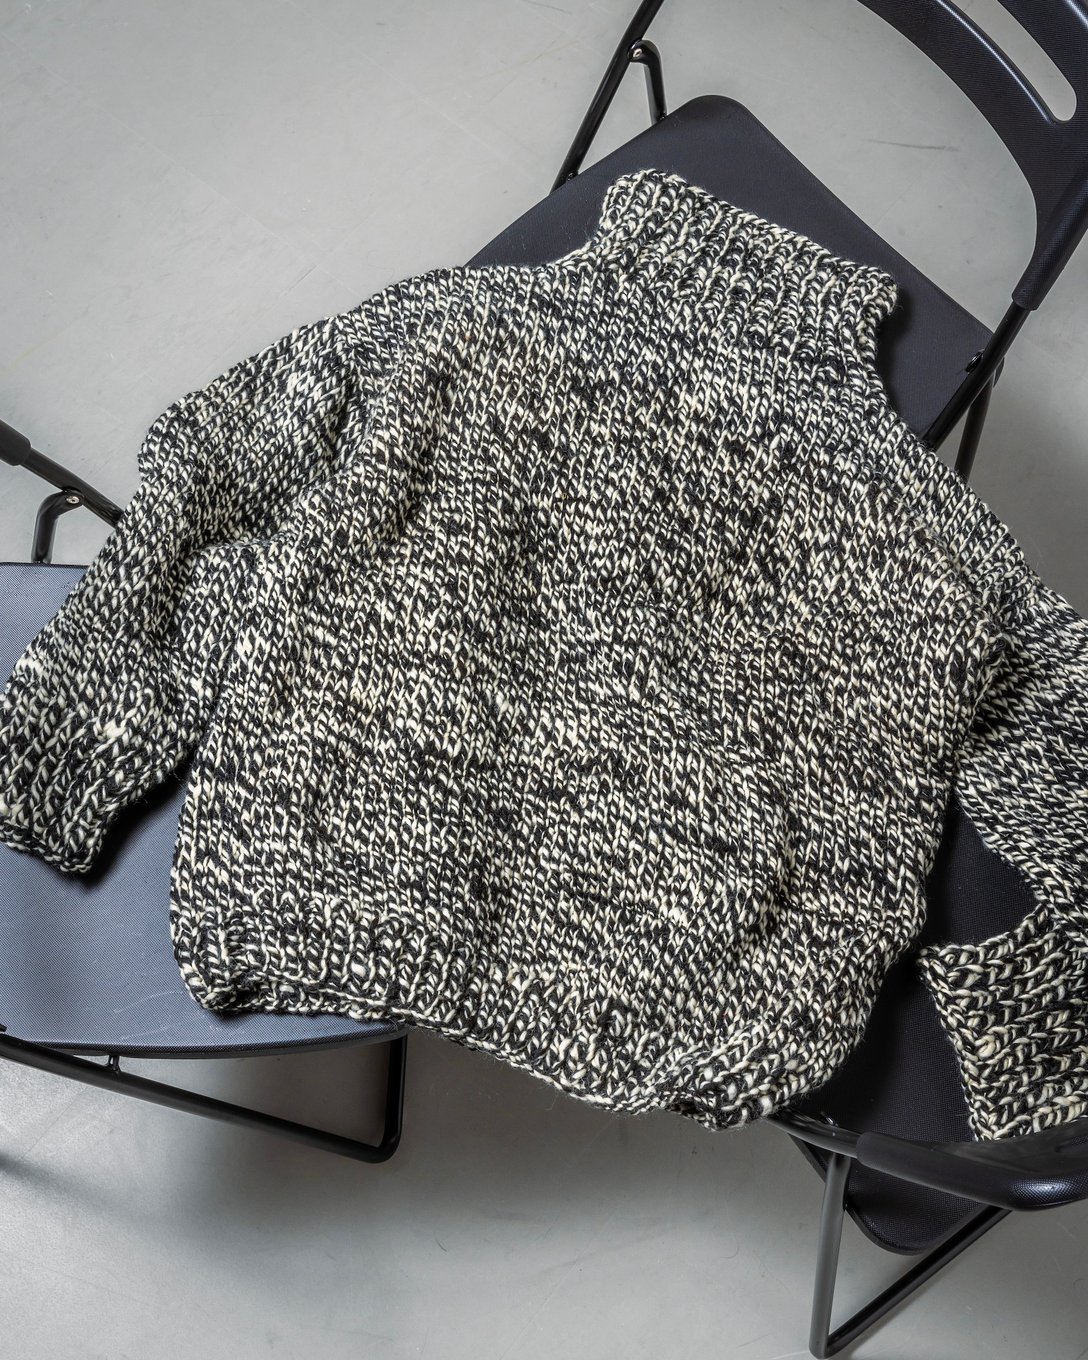 椅子に置かれたシーオールのハイネックセーター